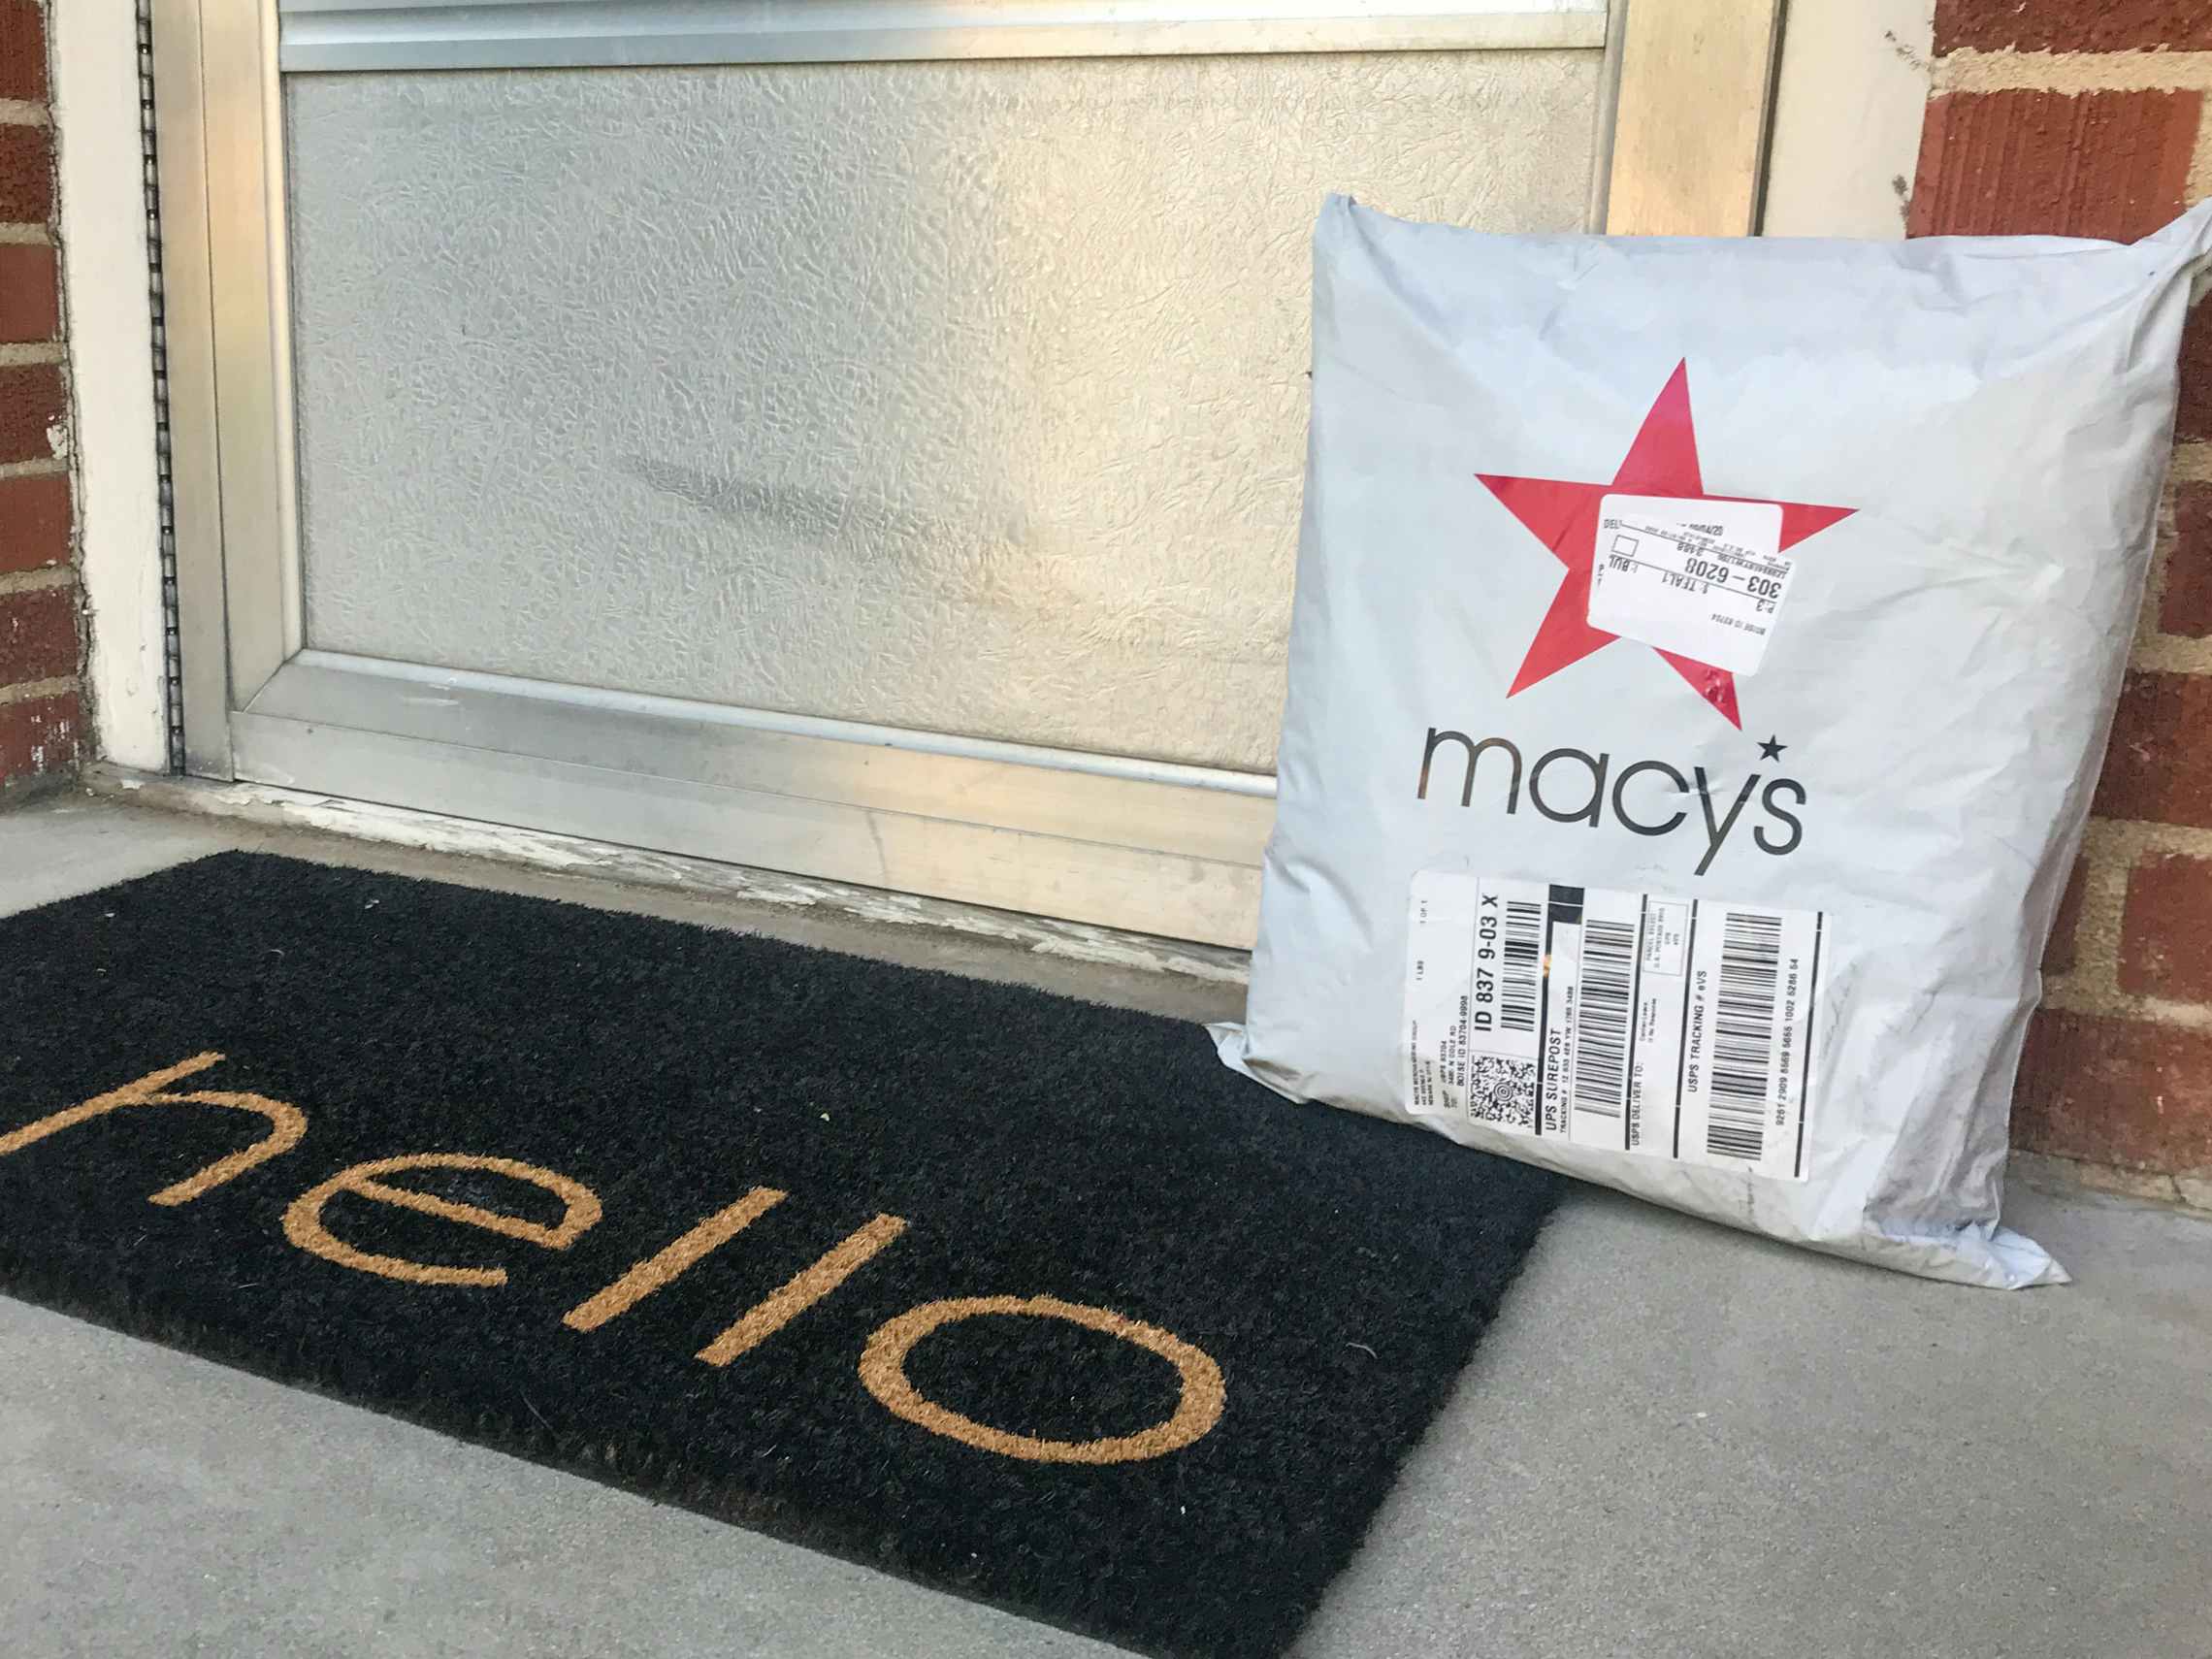 Macys.com online order package on a doorstep